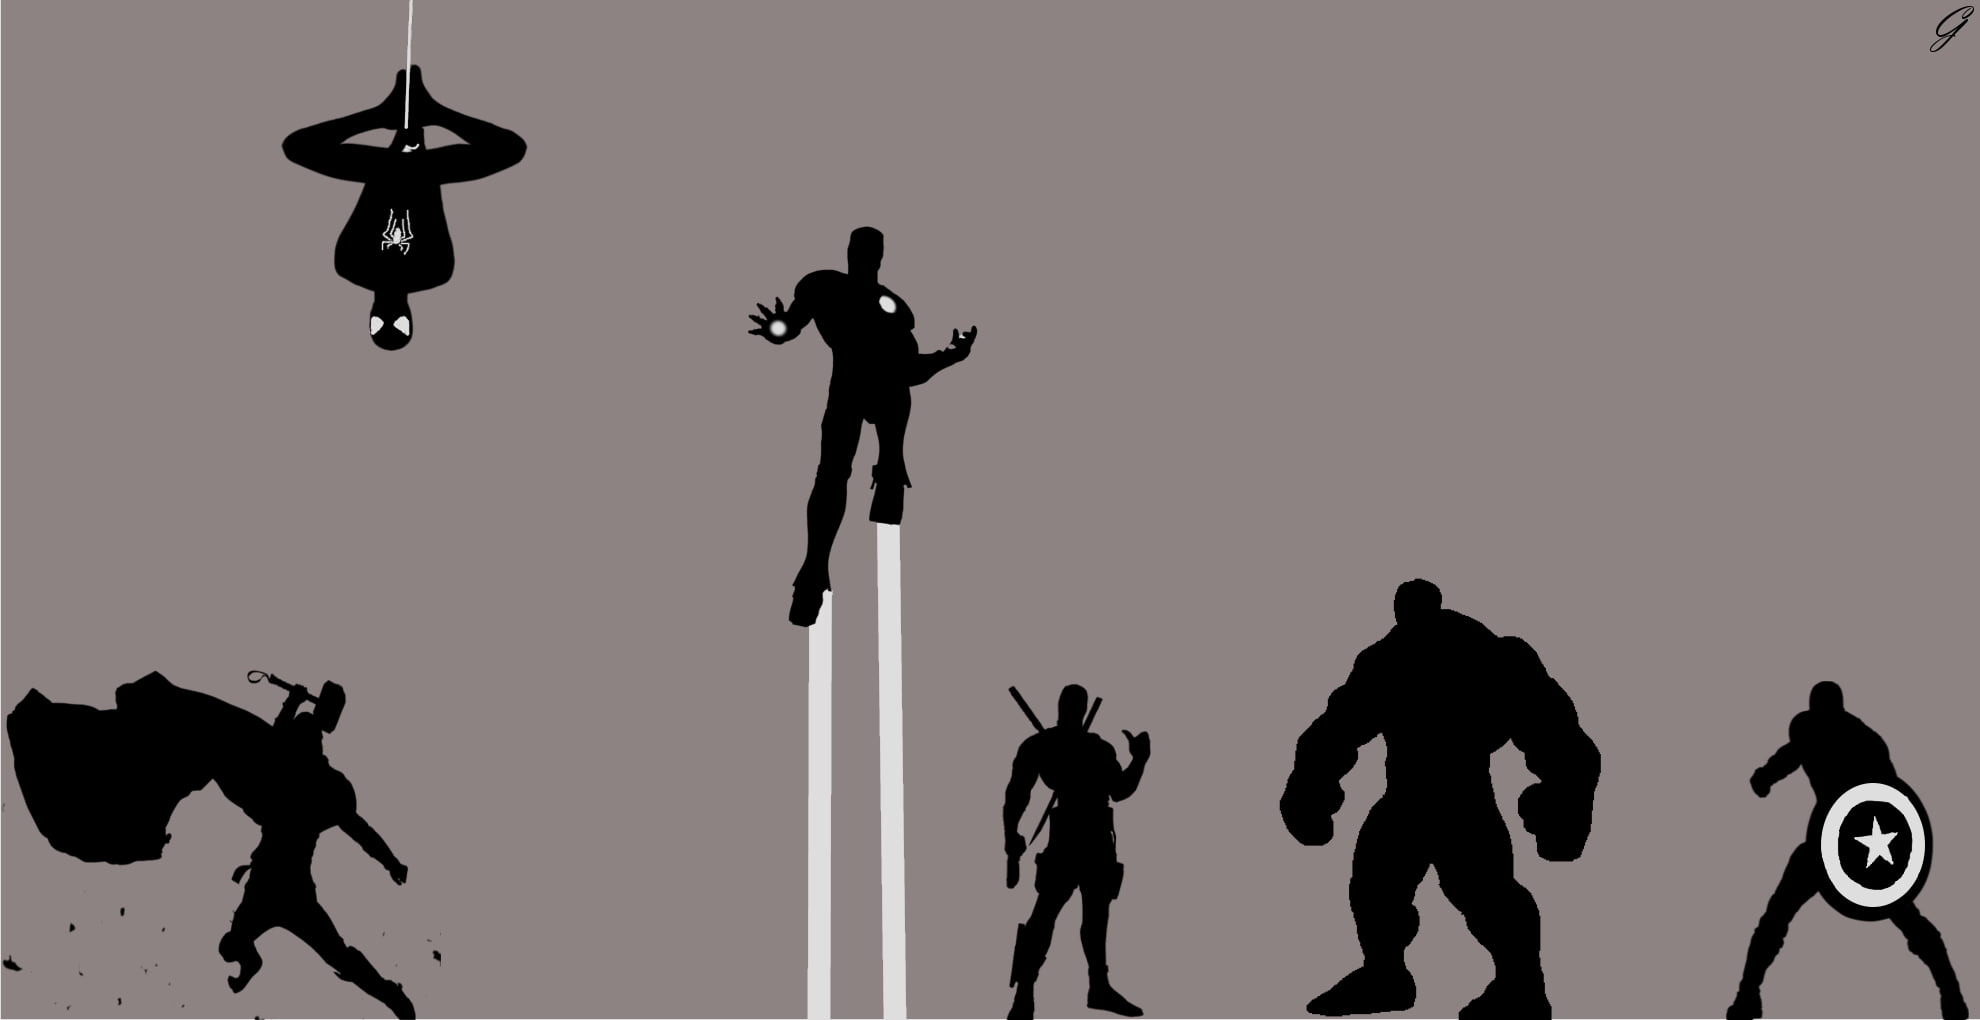 Marvel Avengers digital wallpaper, Thor 2: The Dark World